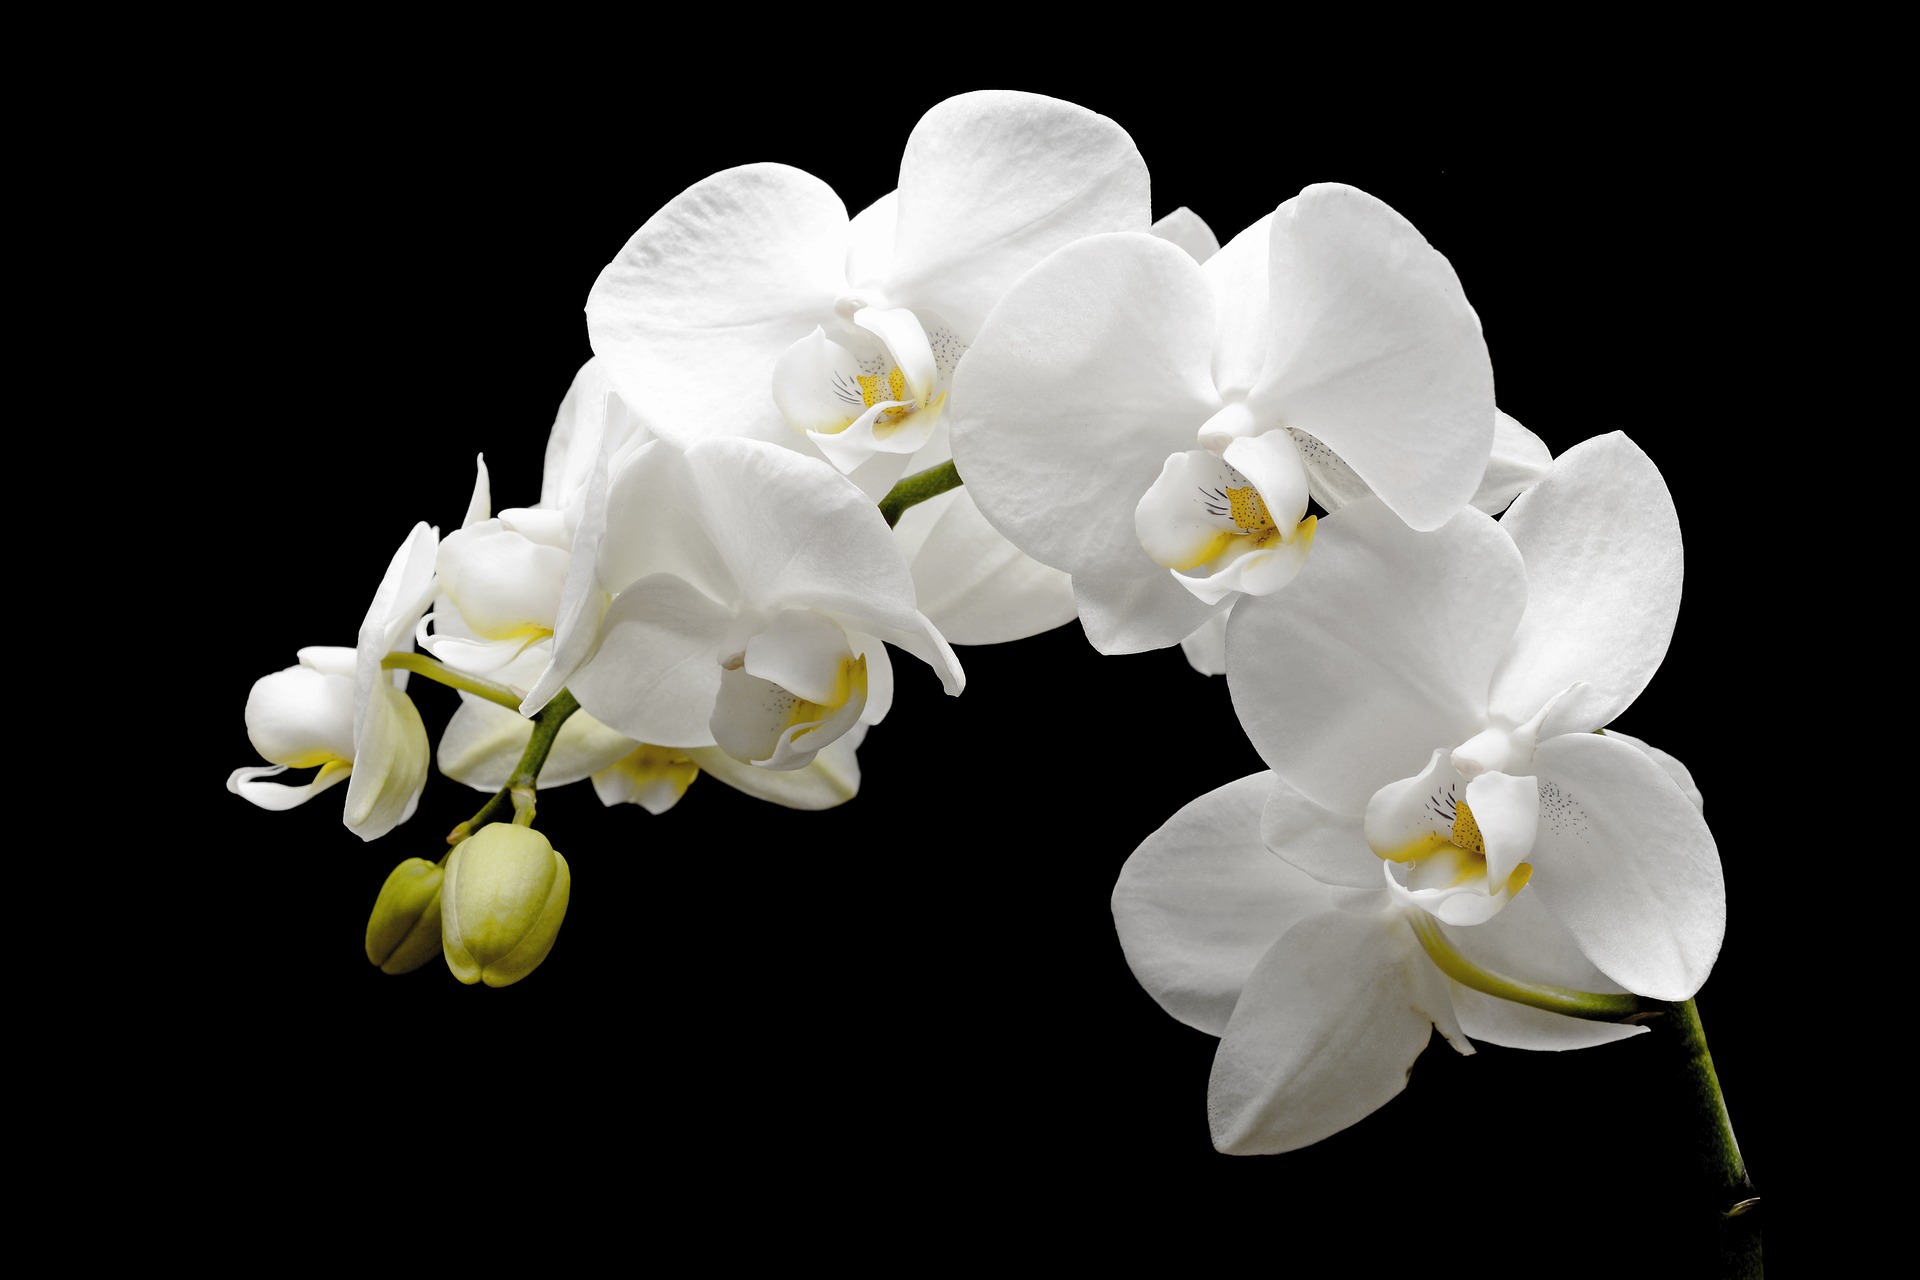 初心者におすすめの胡蝶蘭アマビリス 花の特徴と育て方のコツ Hanasaku